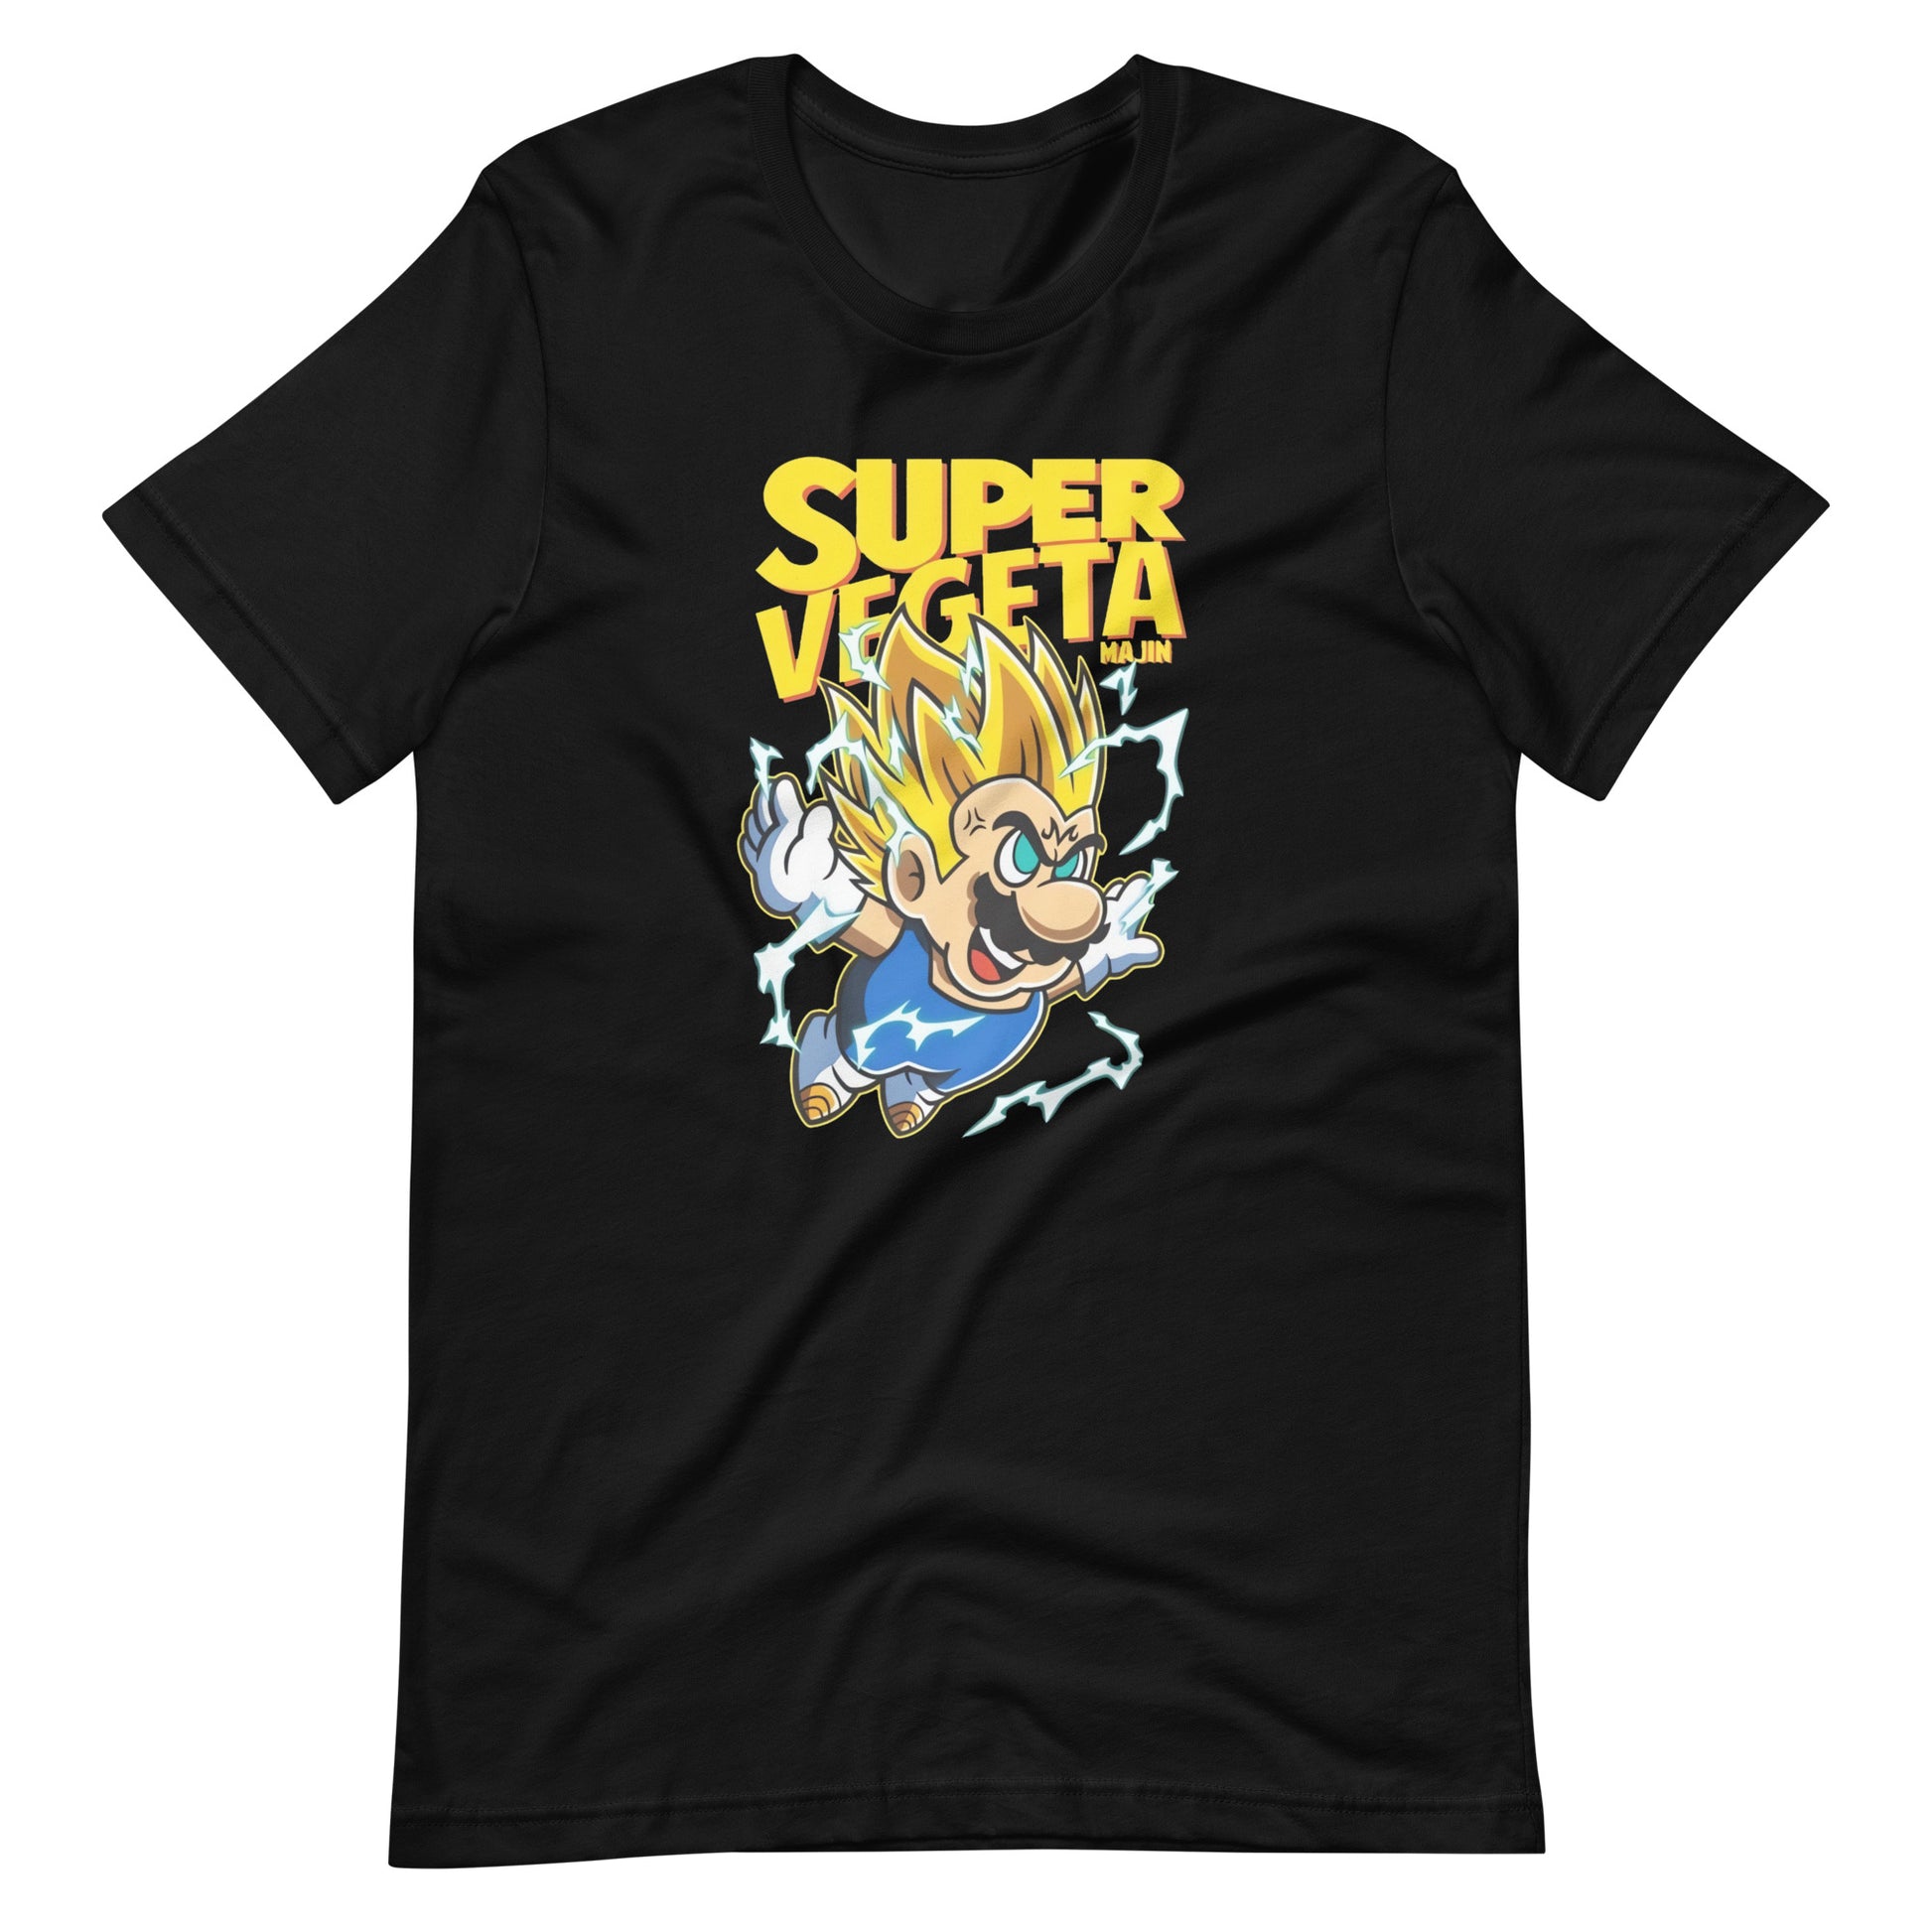 ¡Compra el mejor merchandising en Superstar! Encuentra diseños únicos y de alta calidad, Playera de Super Vegeta